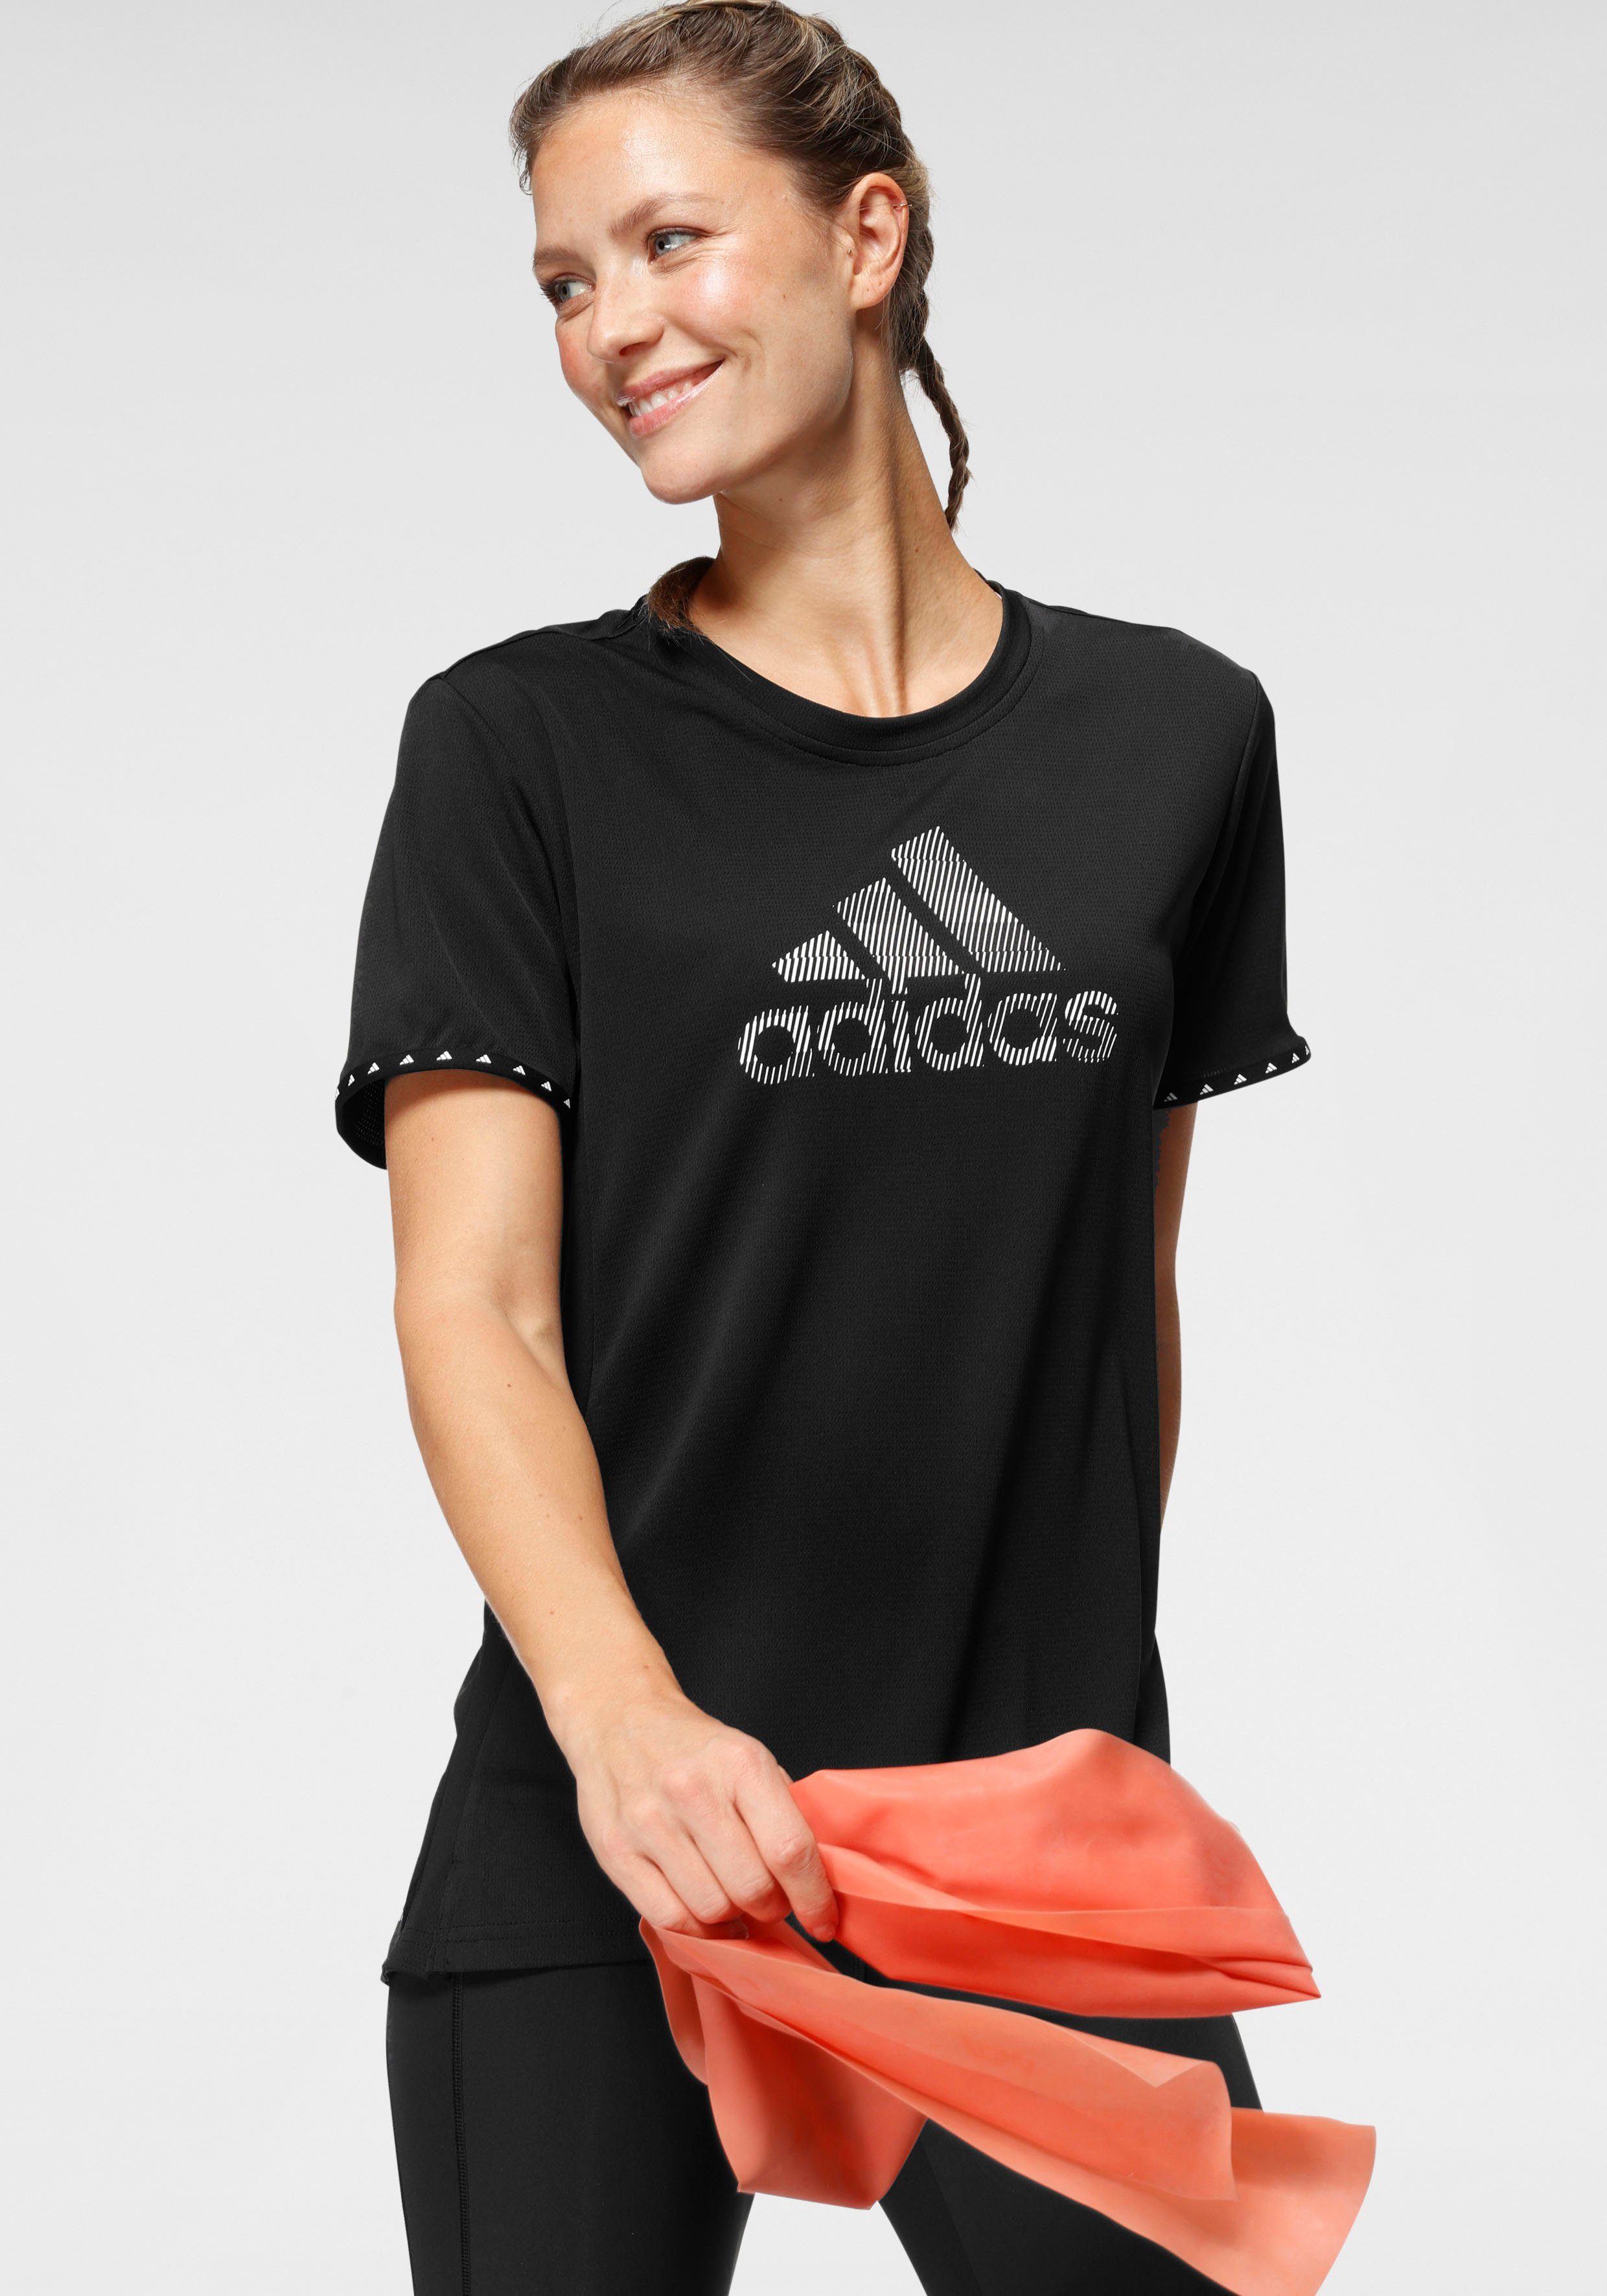 مصغر الخلاف لا أحد الاسم المستعار المراسل تحول sport shirt adidas damen -  lapopotteapitchotte.com